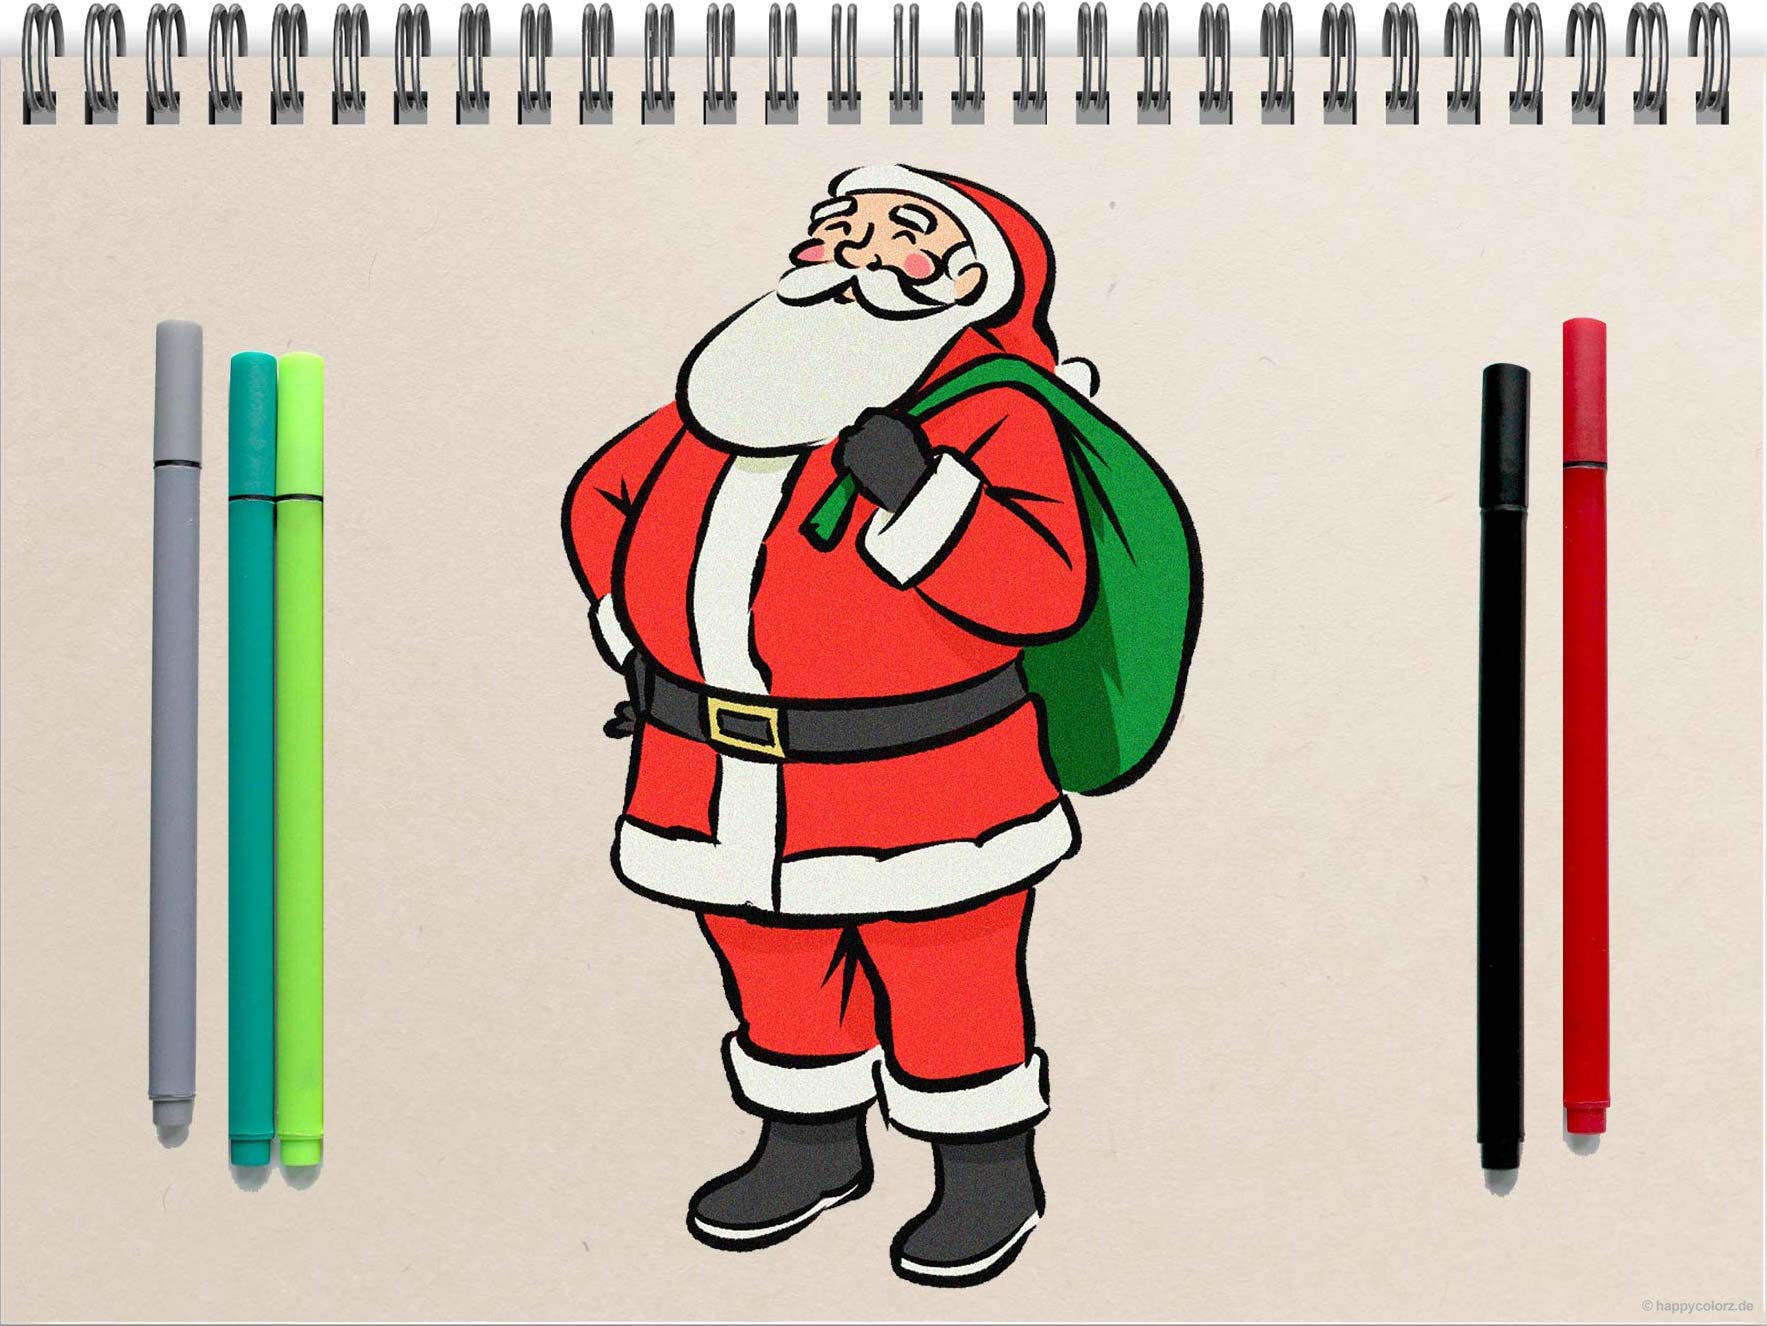 Weihnachtsmann malen - Schritt-für-Schritt Anleitung mit Vorlagen